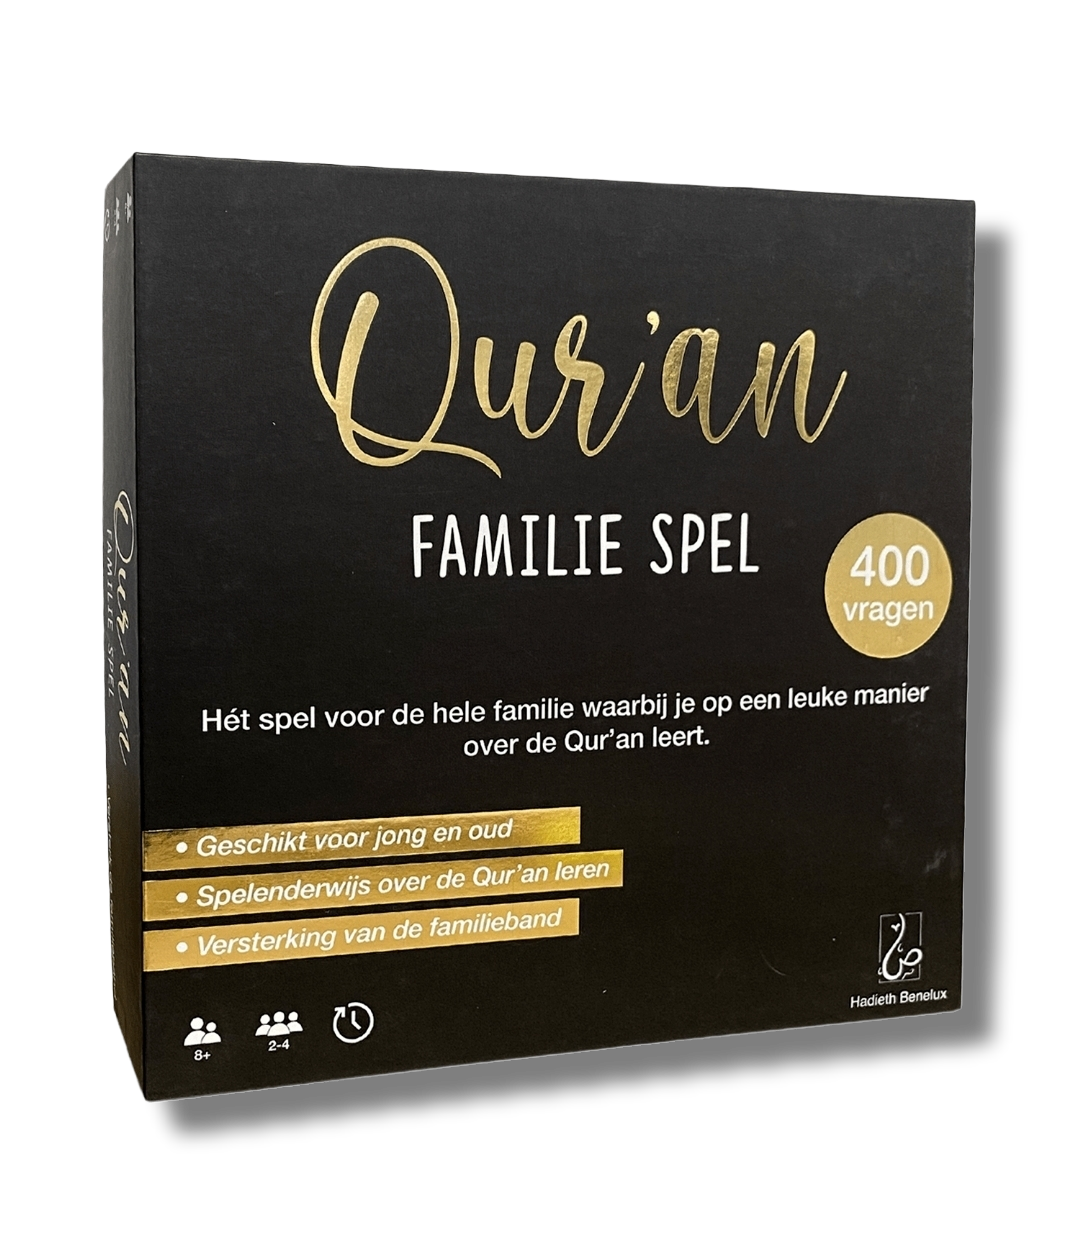 Qur'an familiespel - Zwart/goud